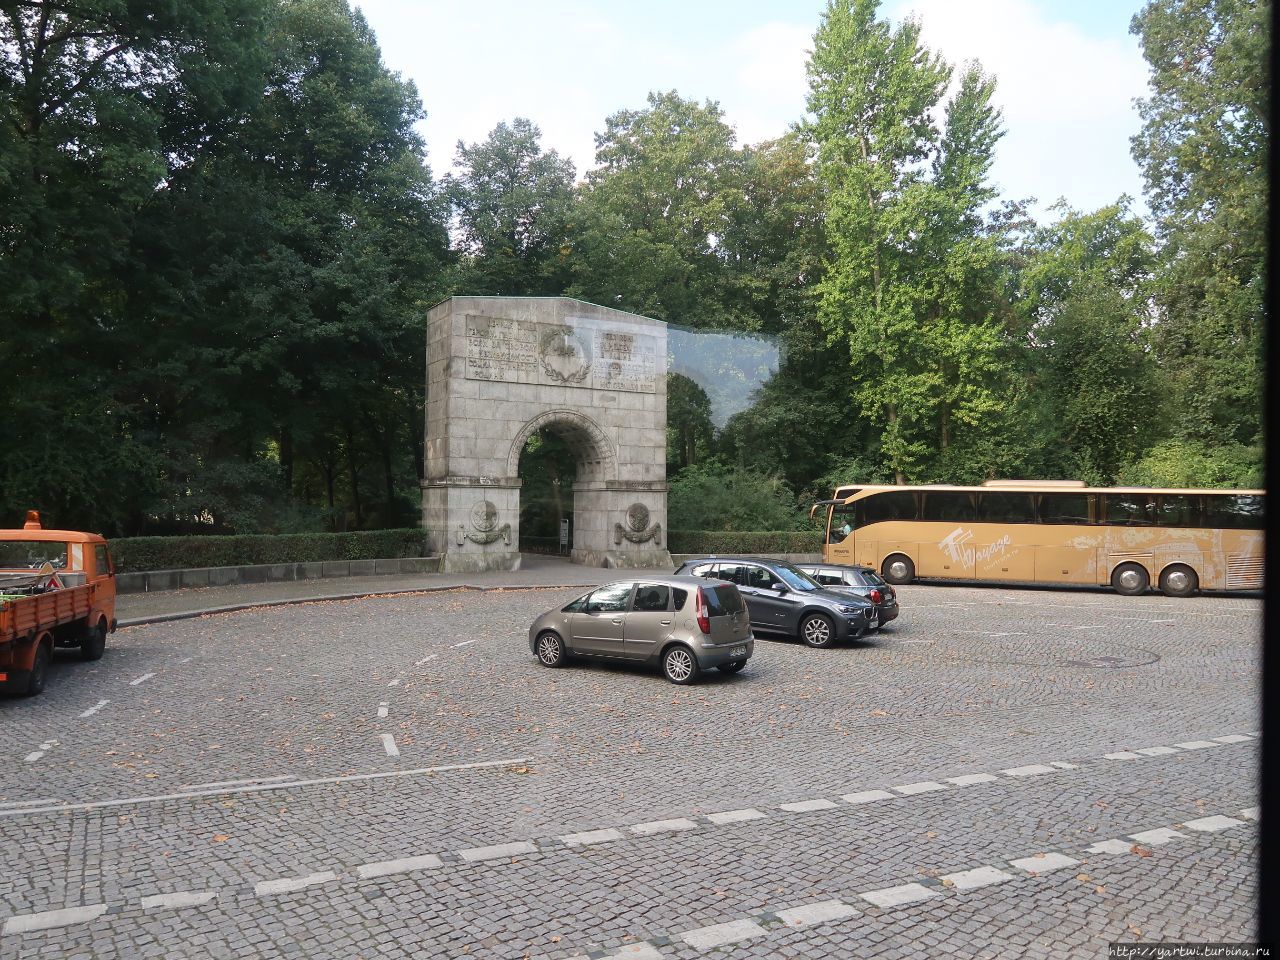 Первая наша остановка в Берлине — Трептов-парк, который находится на берегу реки Шпрее. Берлин, Германия